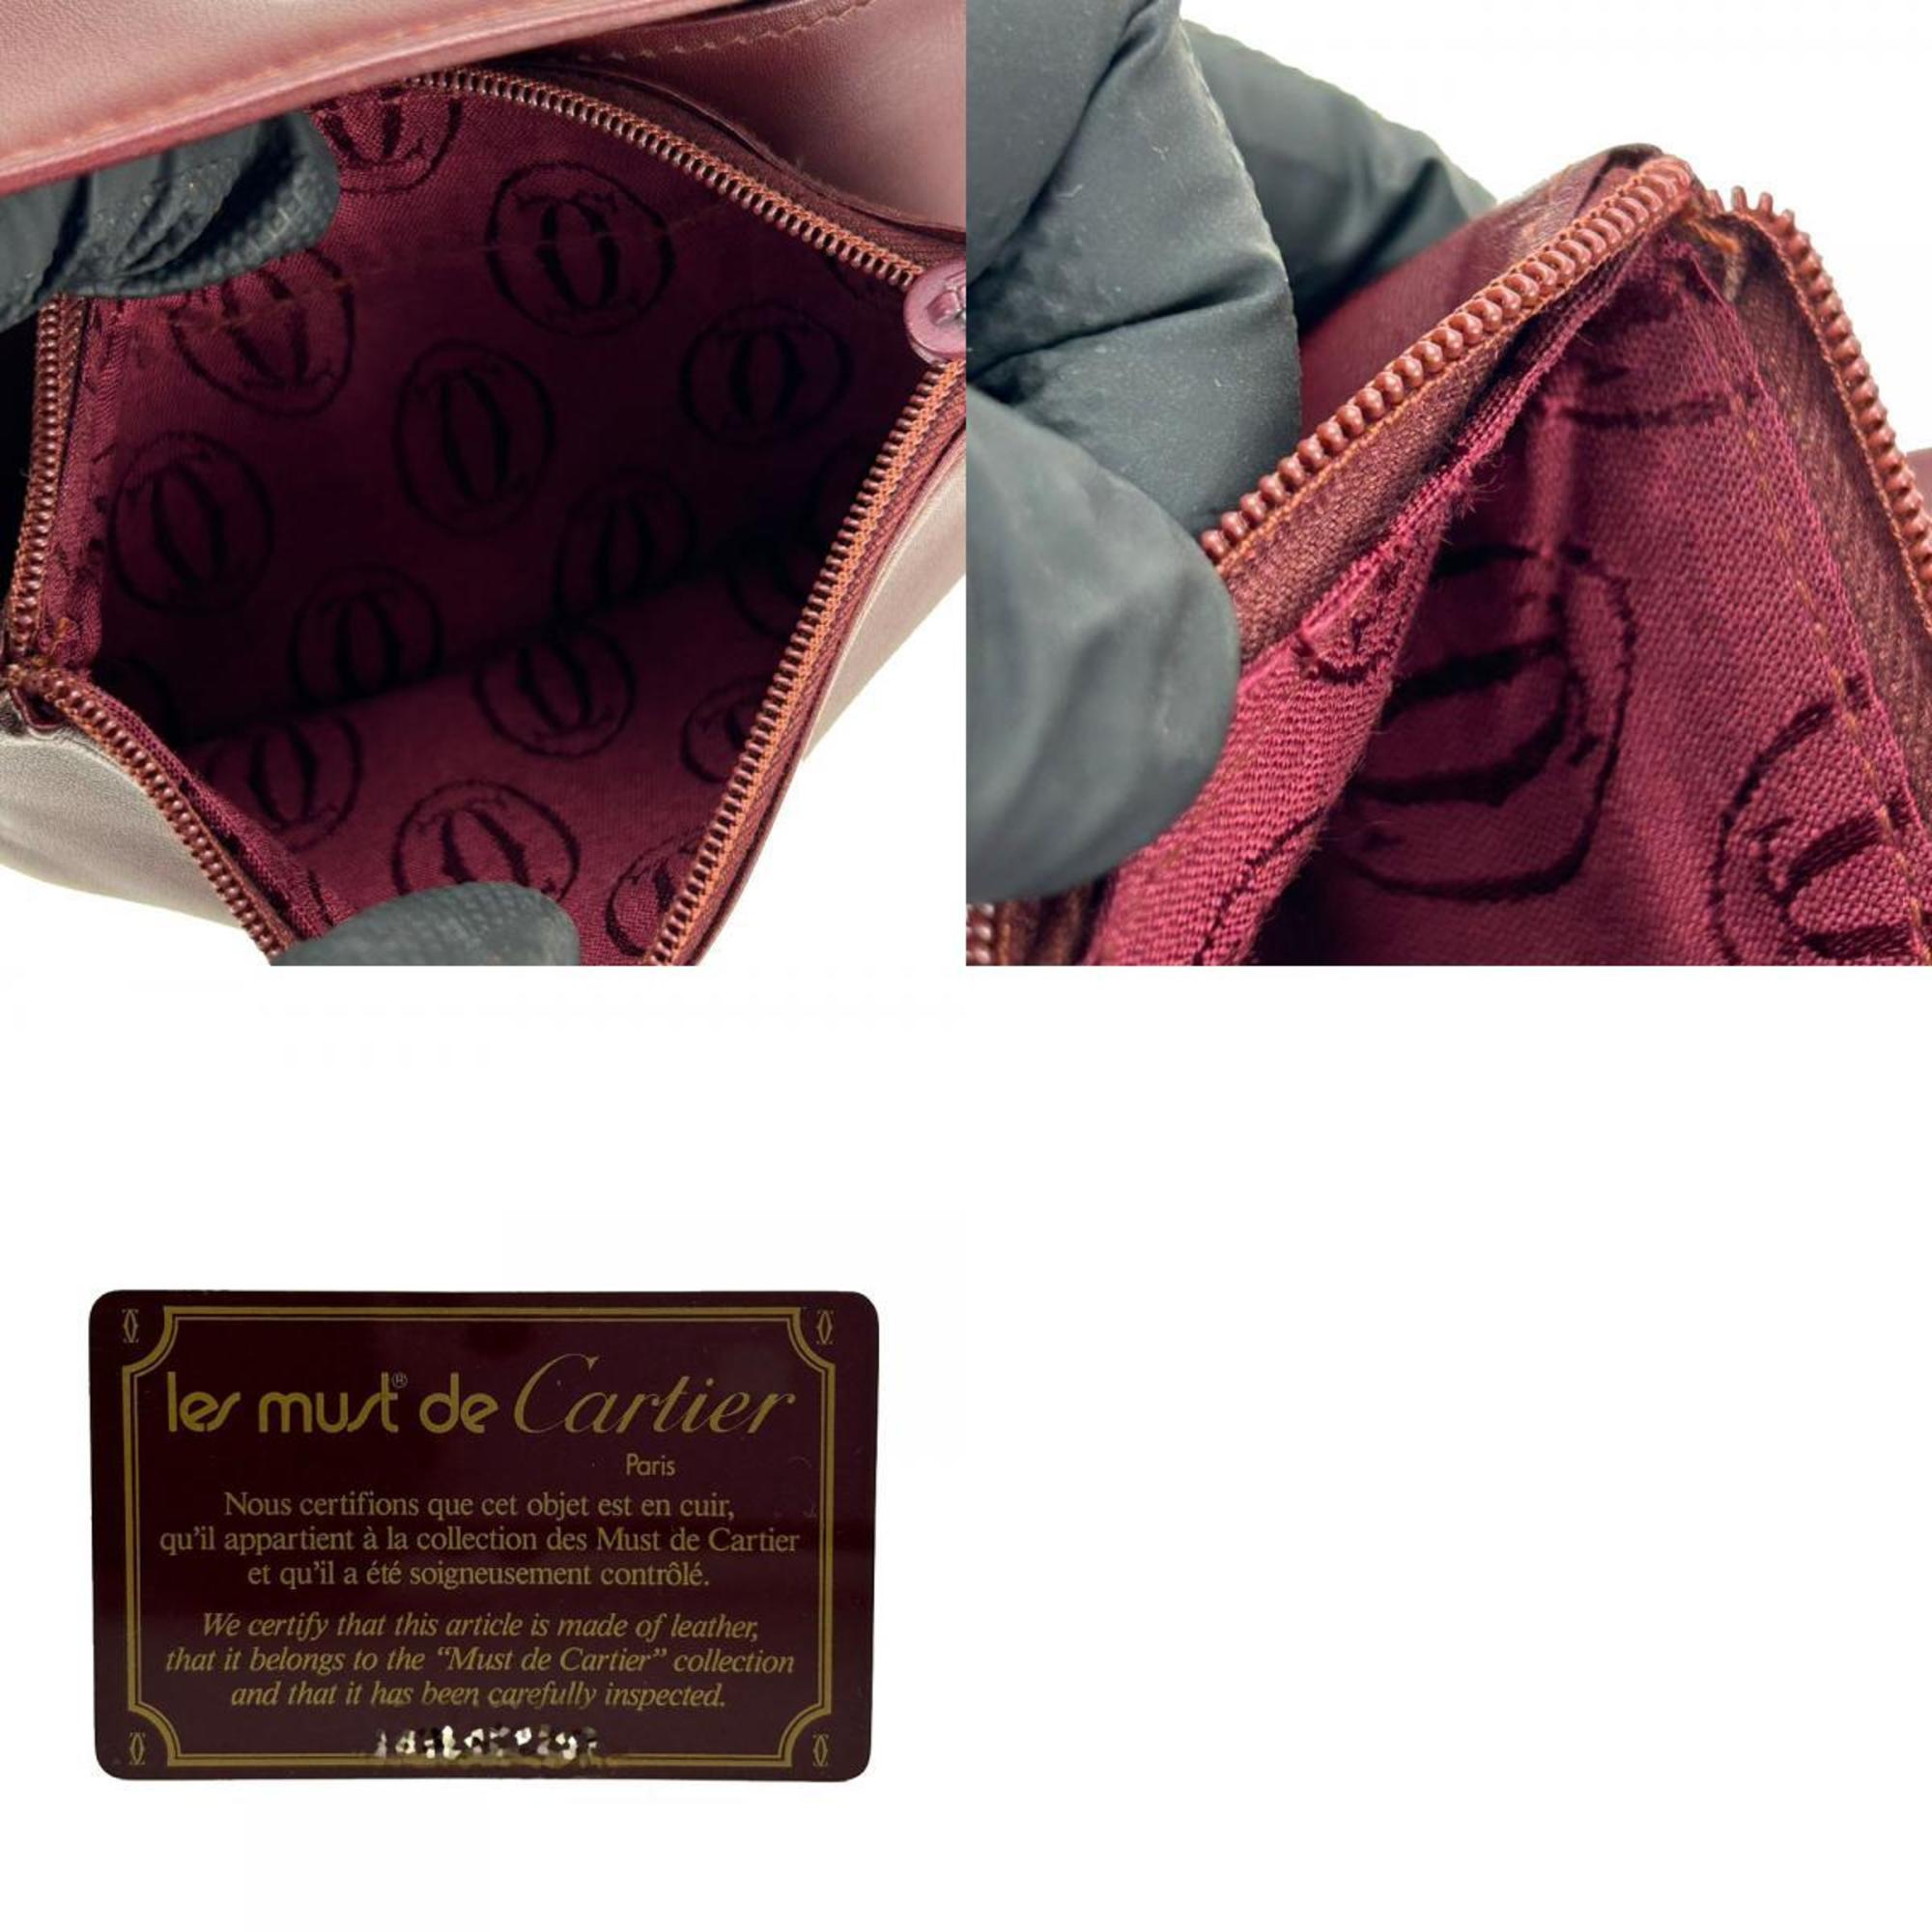 Cartier pouch must line leather bordeaux accessories de cartier ladies CARTIER